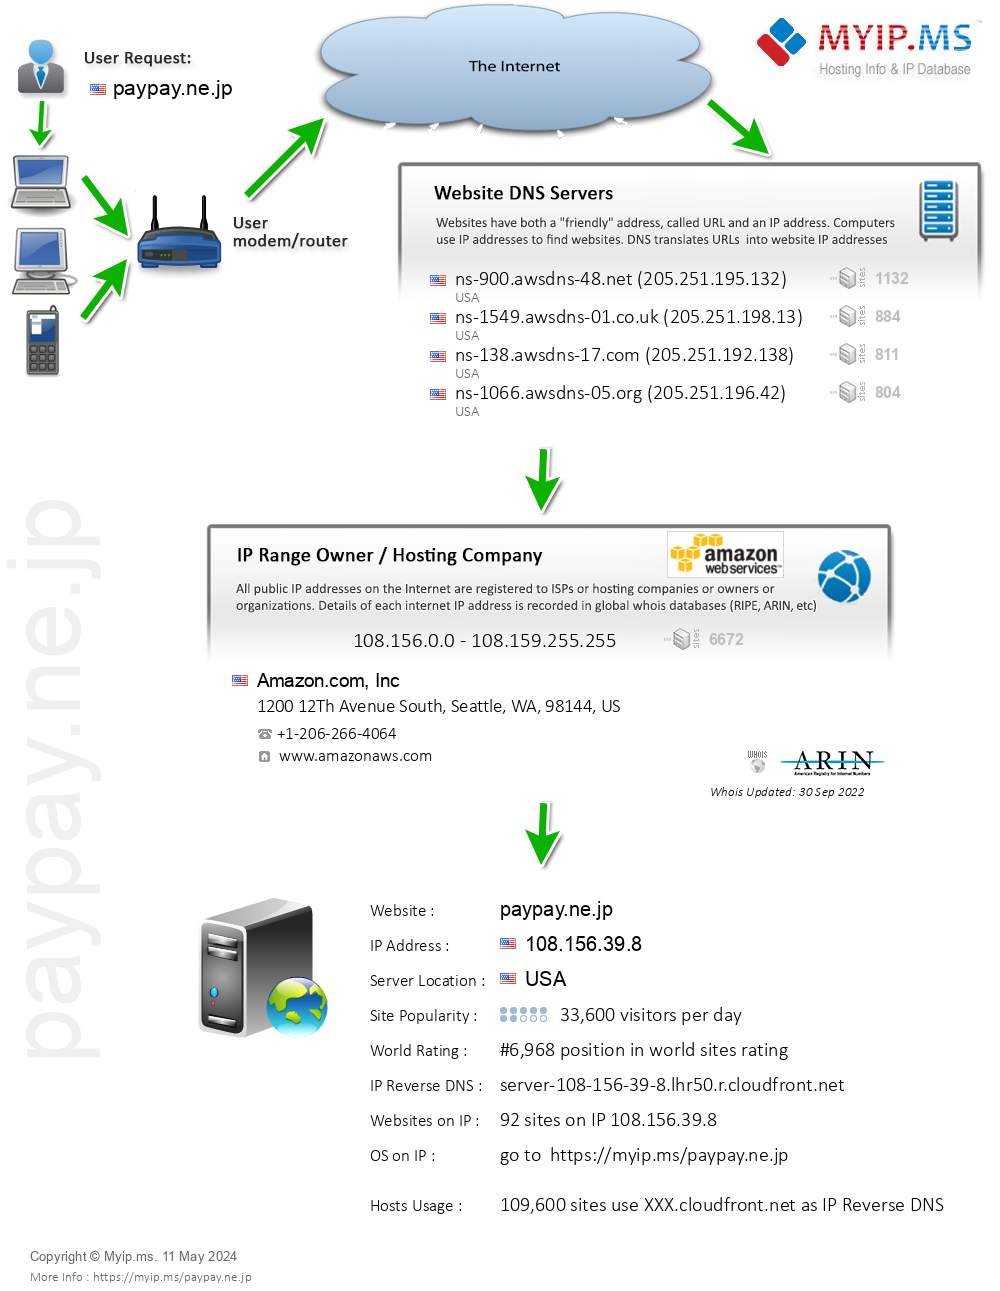 Paypay.ne.jp - Website Hosting Visual IP Diagram